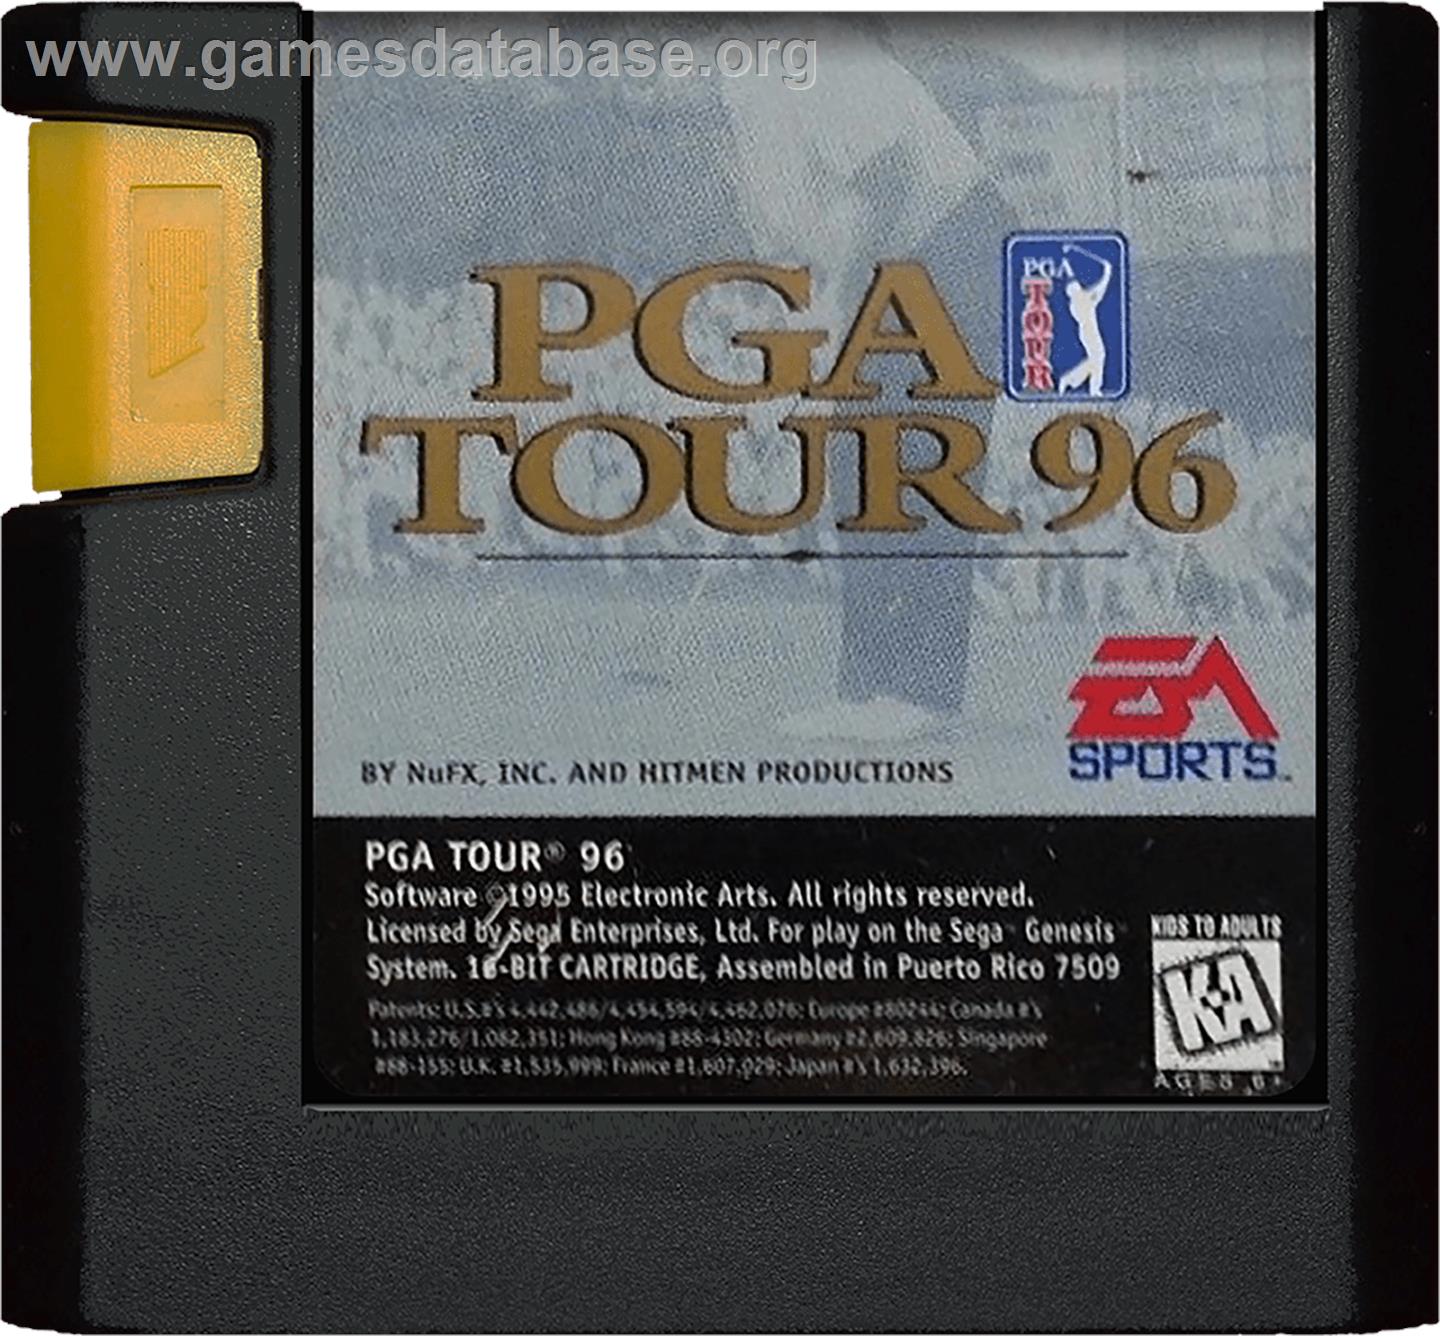 PGA Tour '96 - Sega Genesis - Artwork - Cartridge